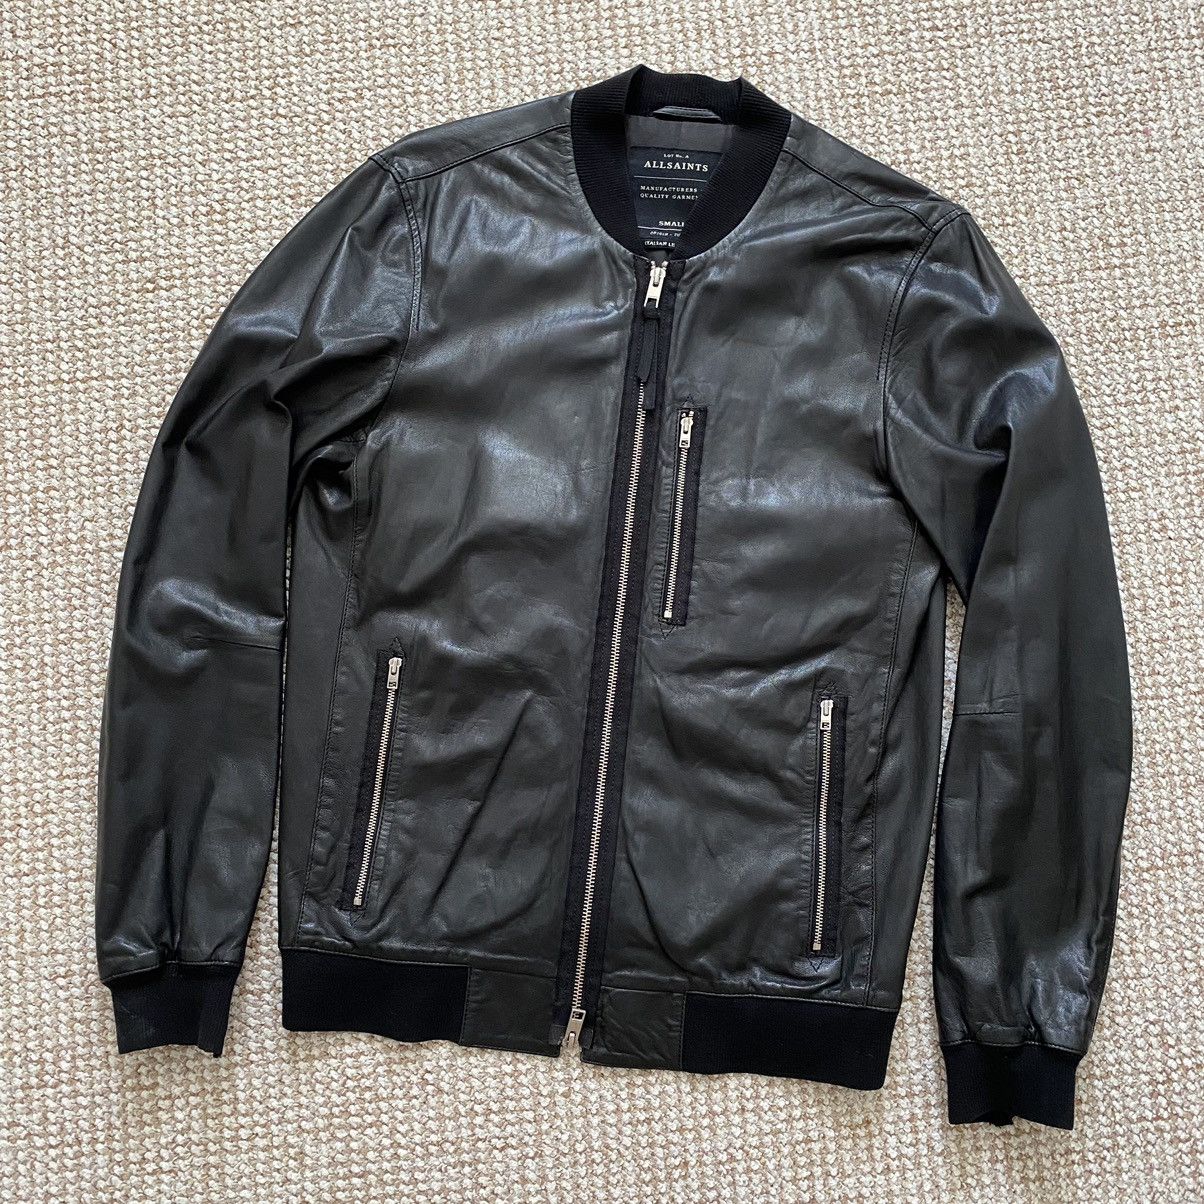 Allsaints Allsaints blenham Italian leather bomber jacket | Grailed